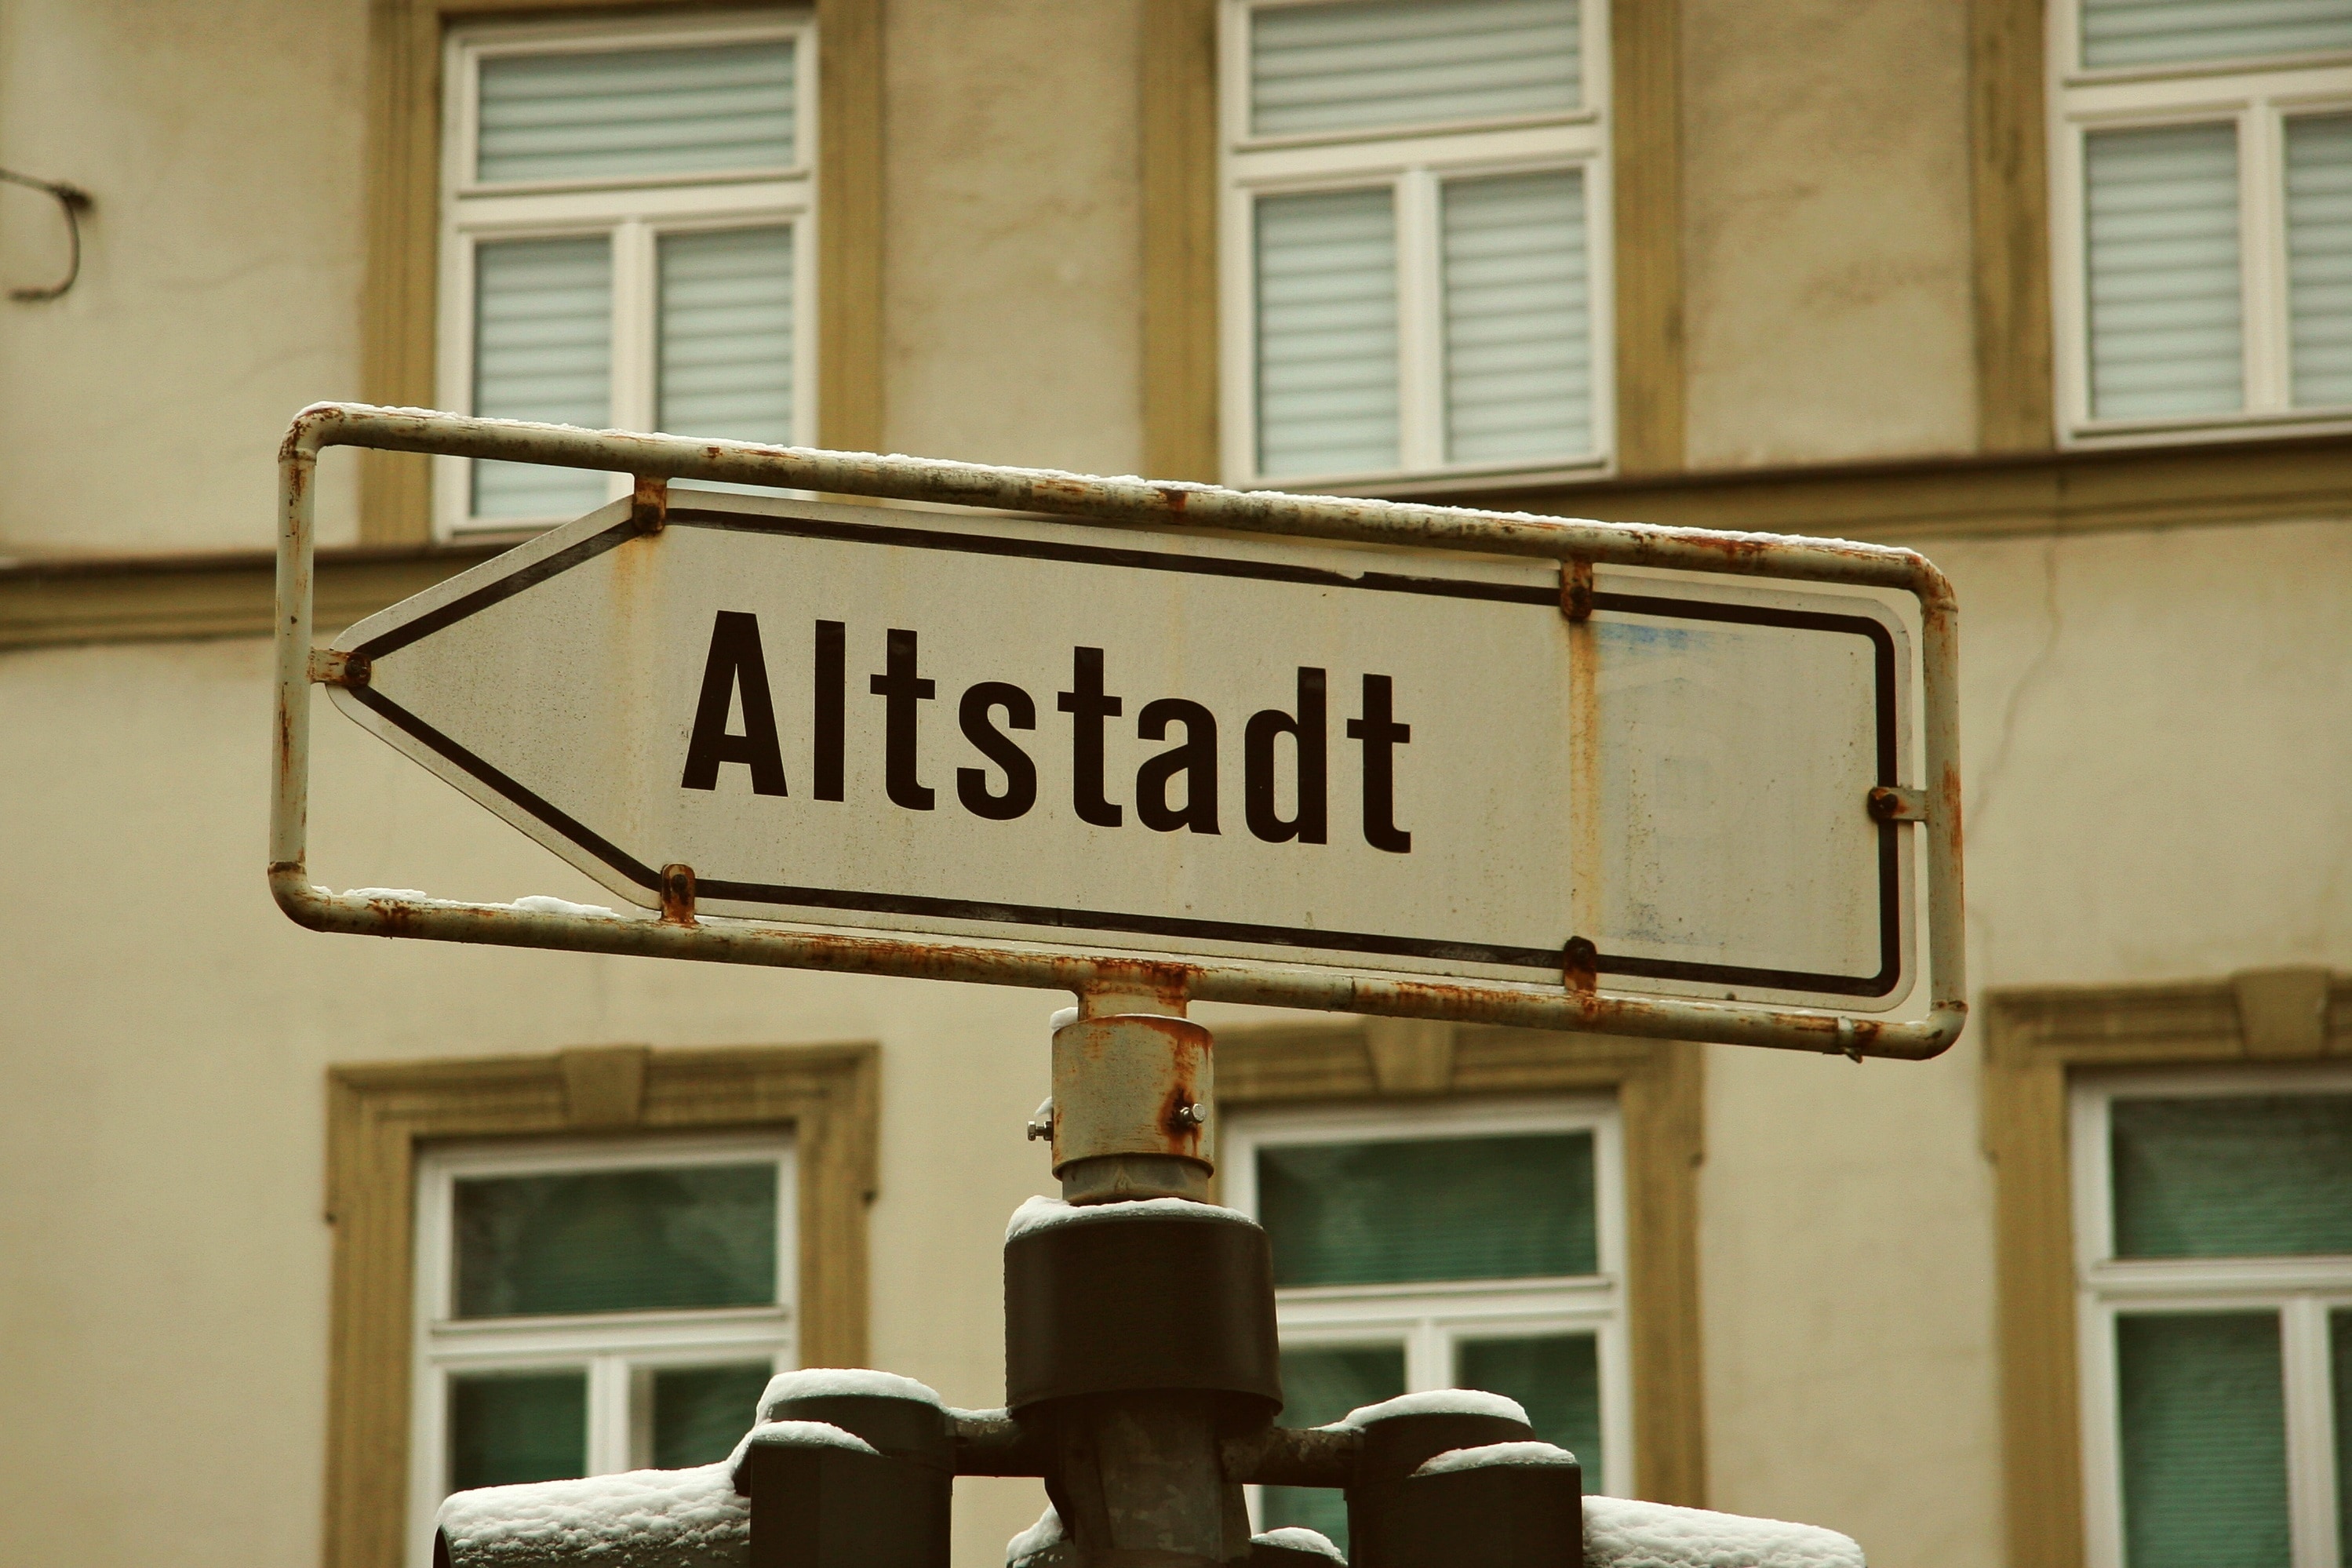 altstadt signage